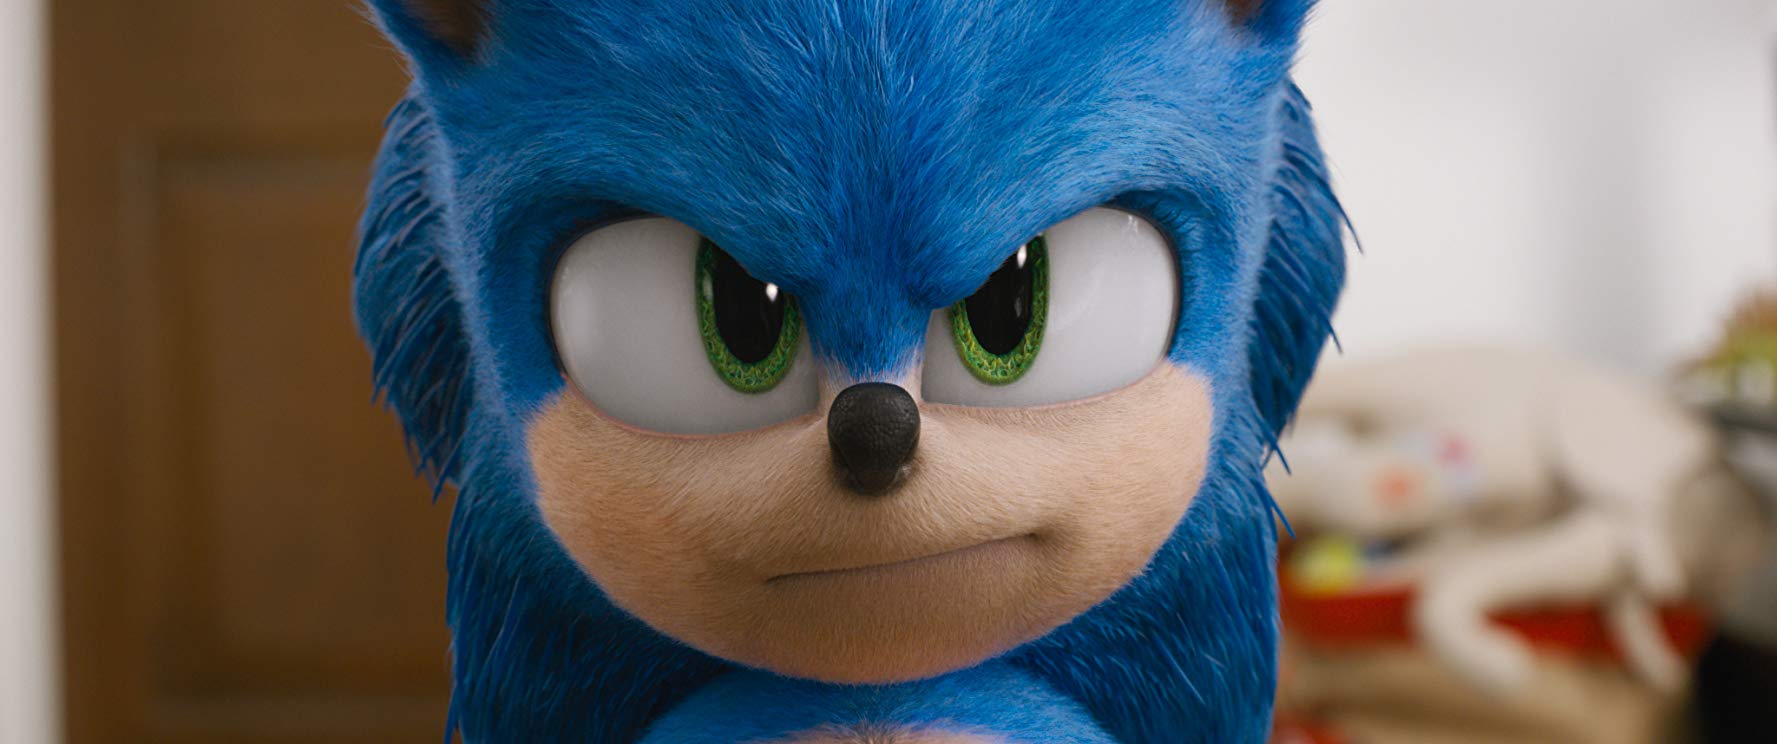 Sonic: O Filme - Bobo, genérico e divertido 4